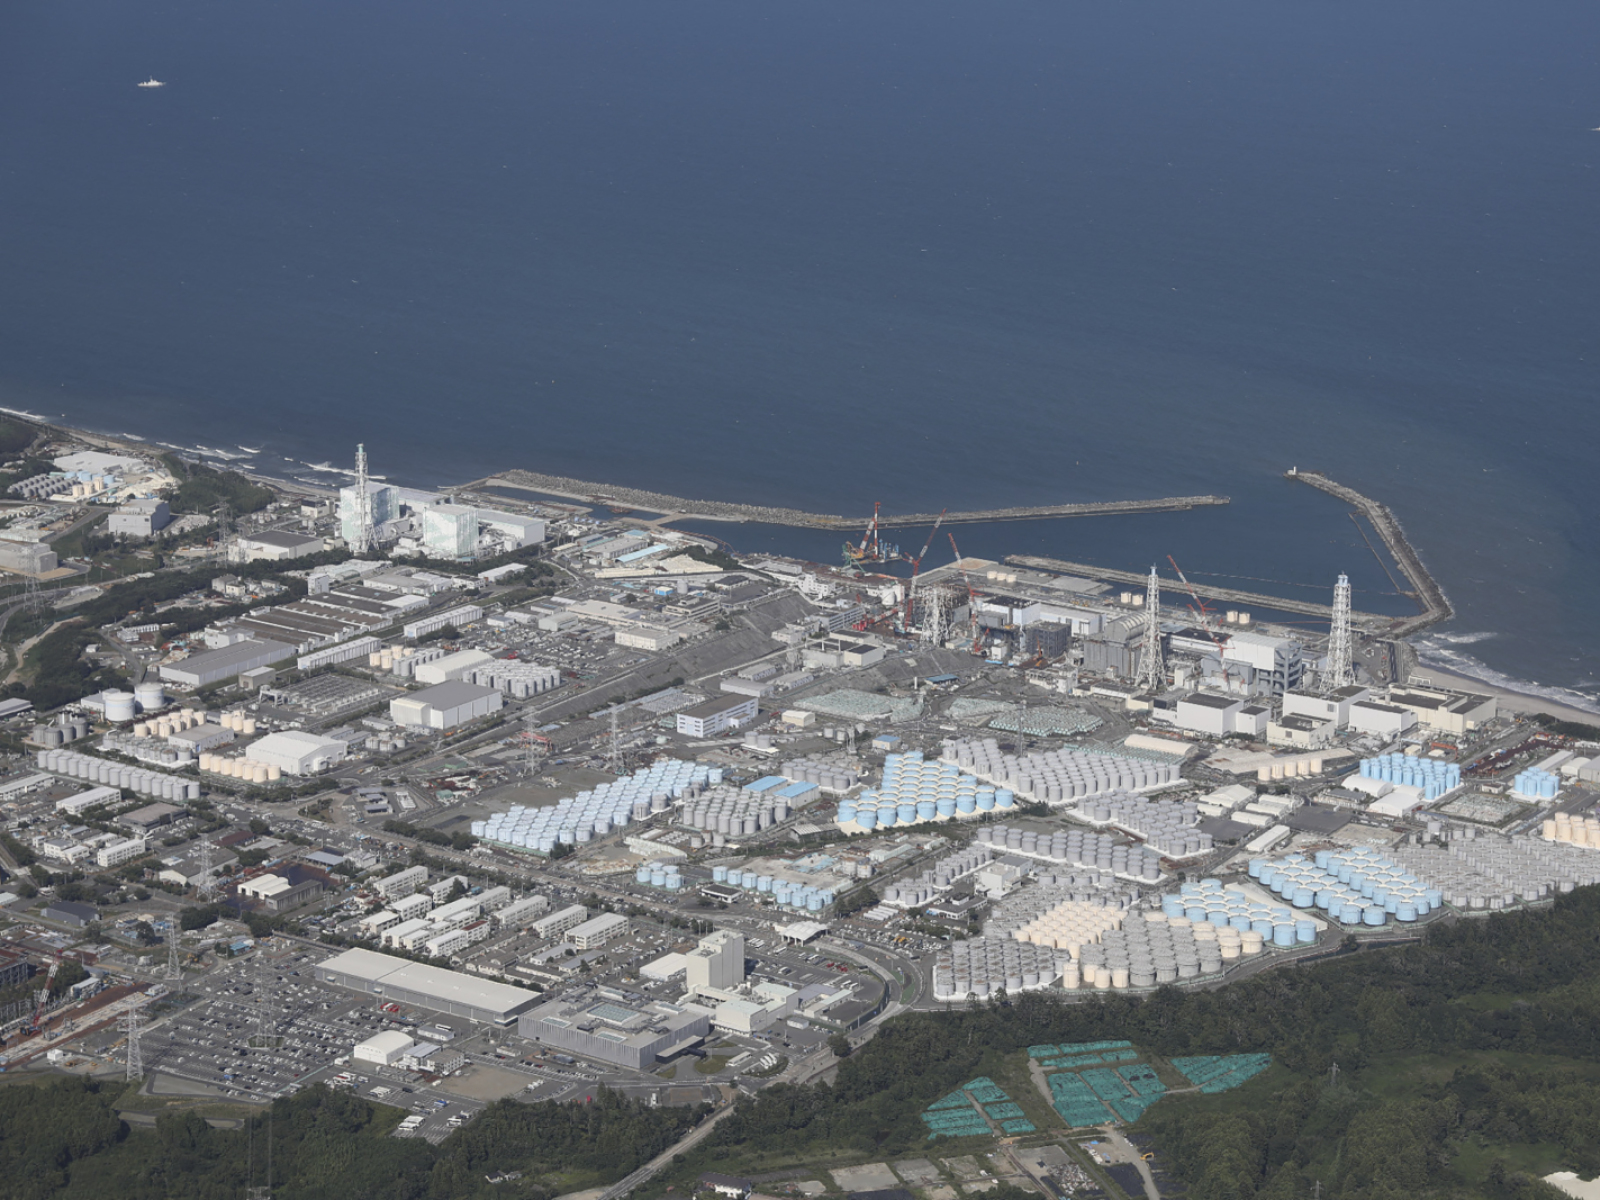 kühlwasser-ableitung am akw fukushima ausgesetzt